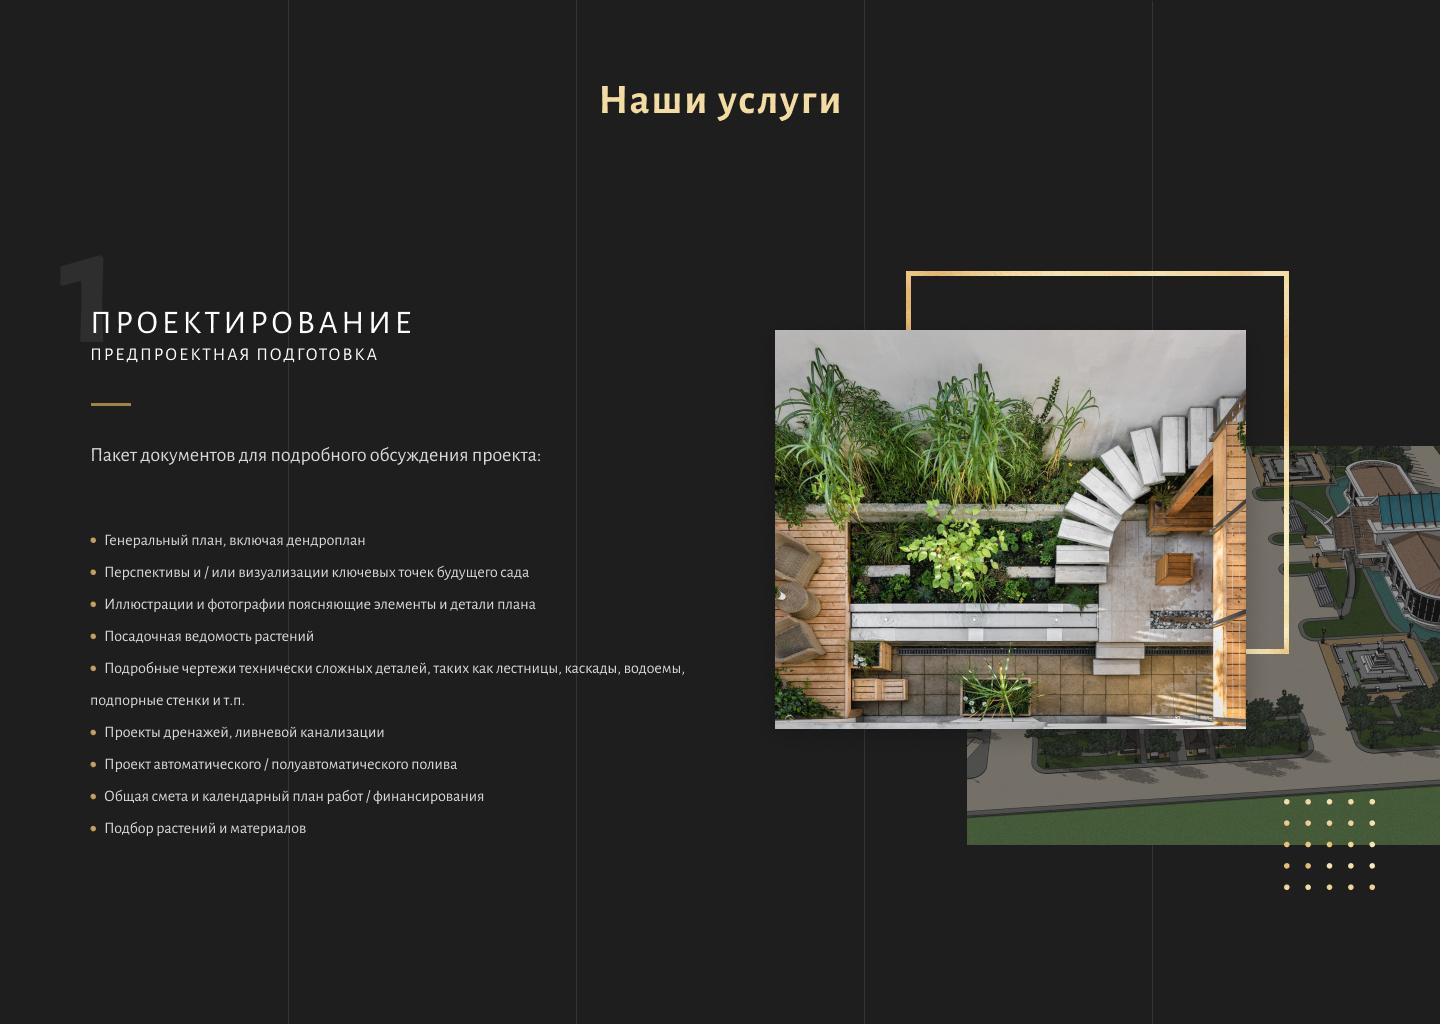 Luxury-дизайн сайта для ландшафтной студии